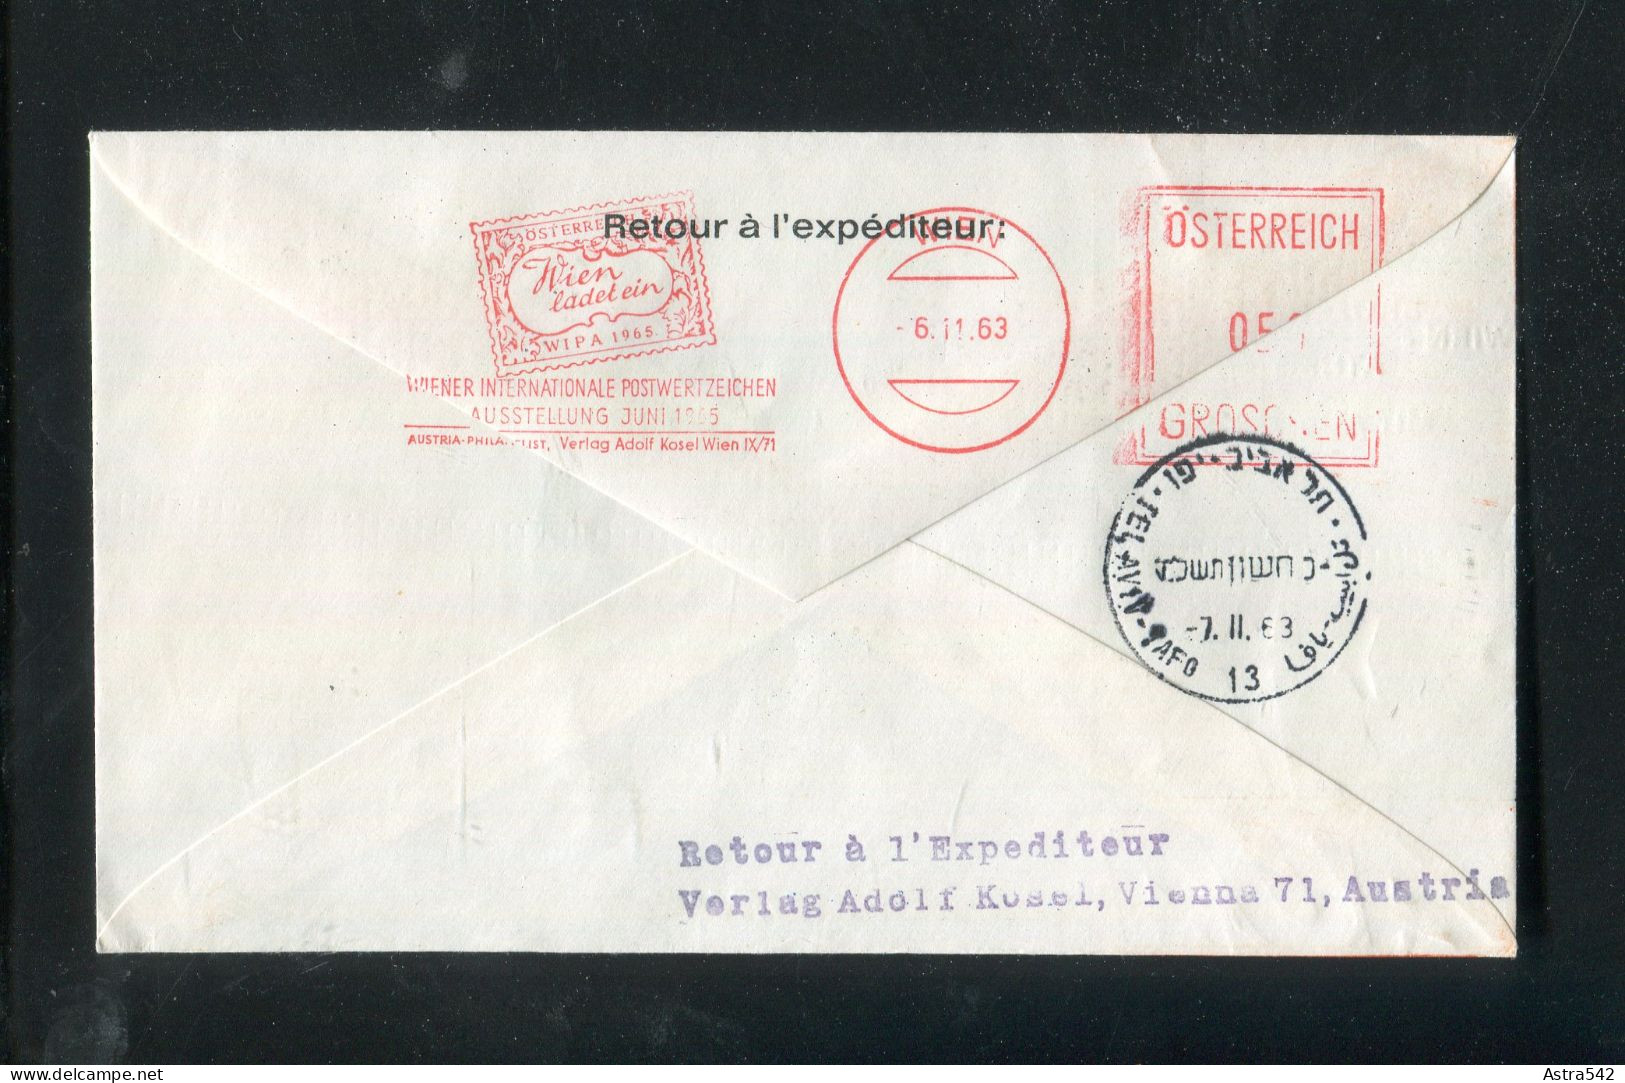 "OESTERREICH" 1963, AUA-Caravelle-Erstflugbrief "Wien-Tel Aviv" (5294) - Premiers Vols